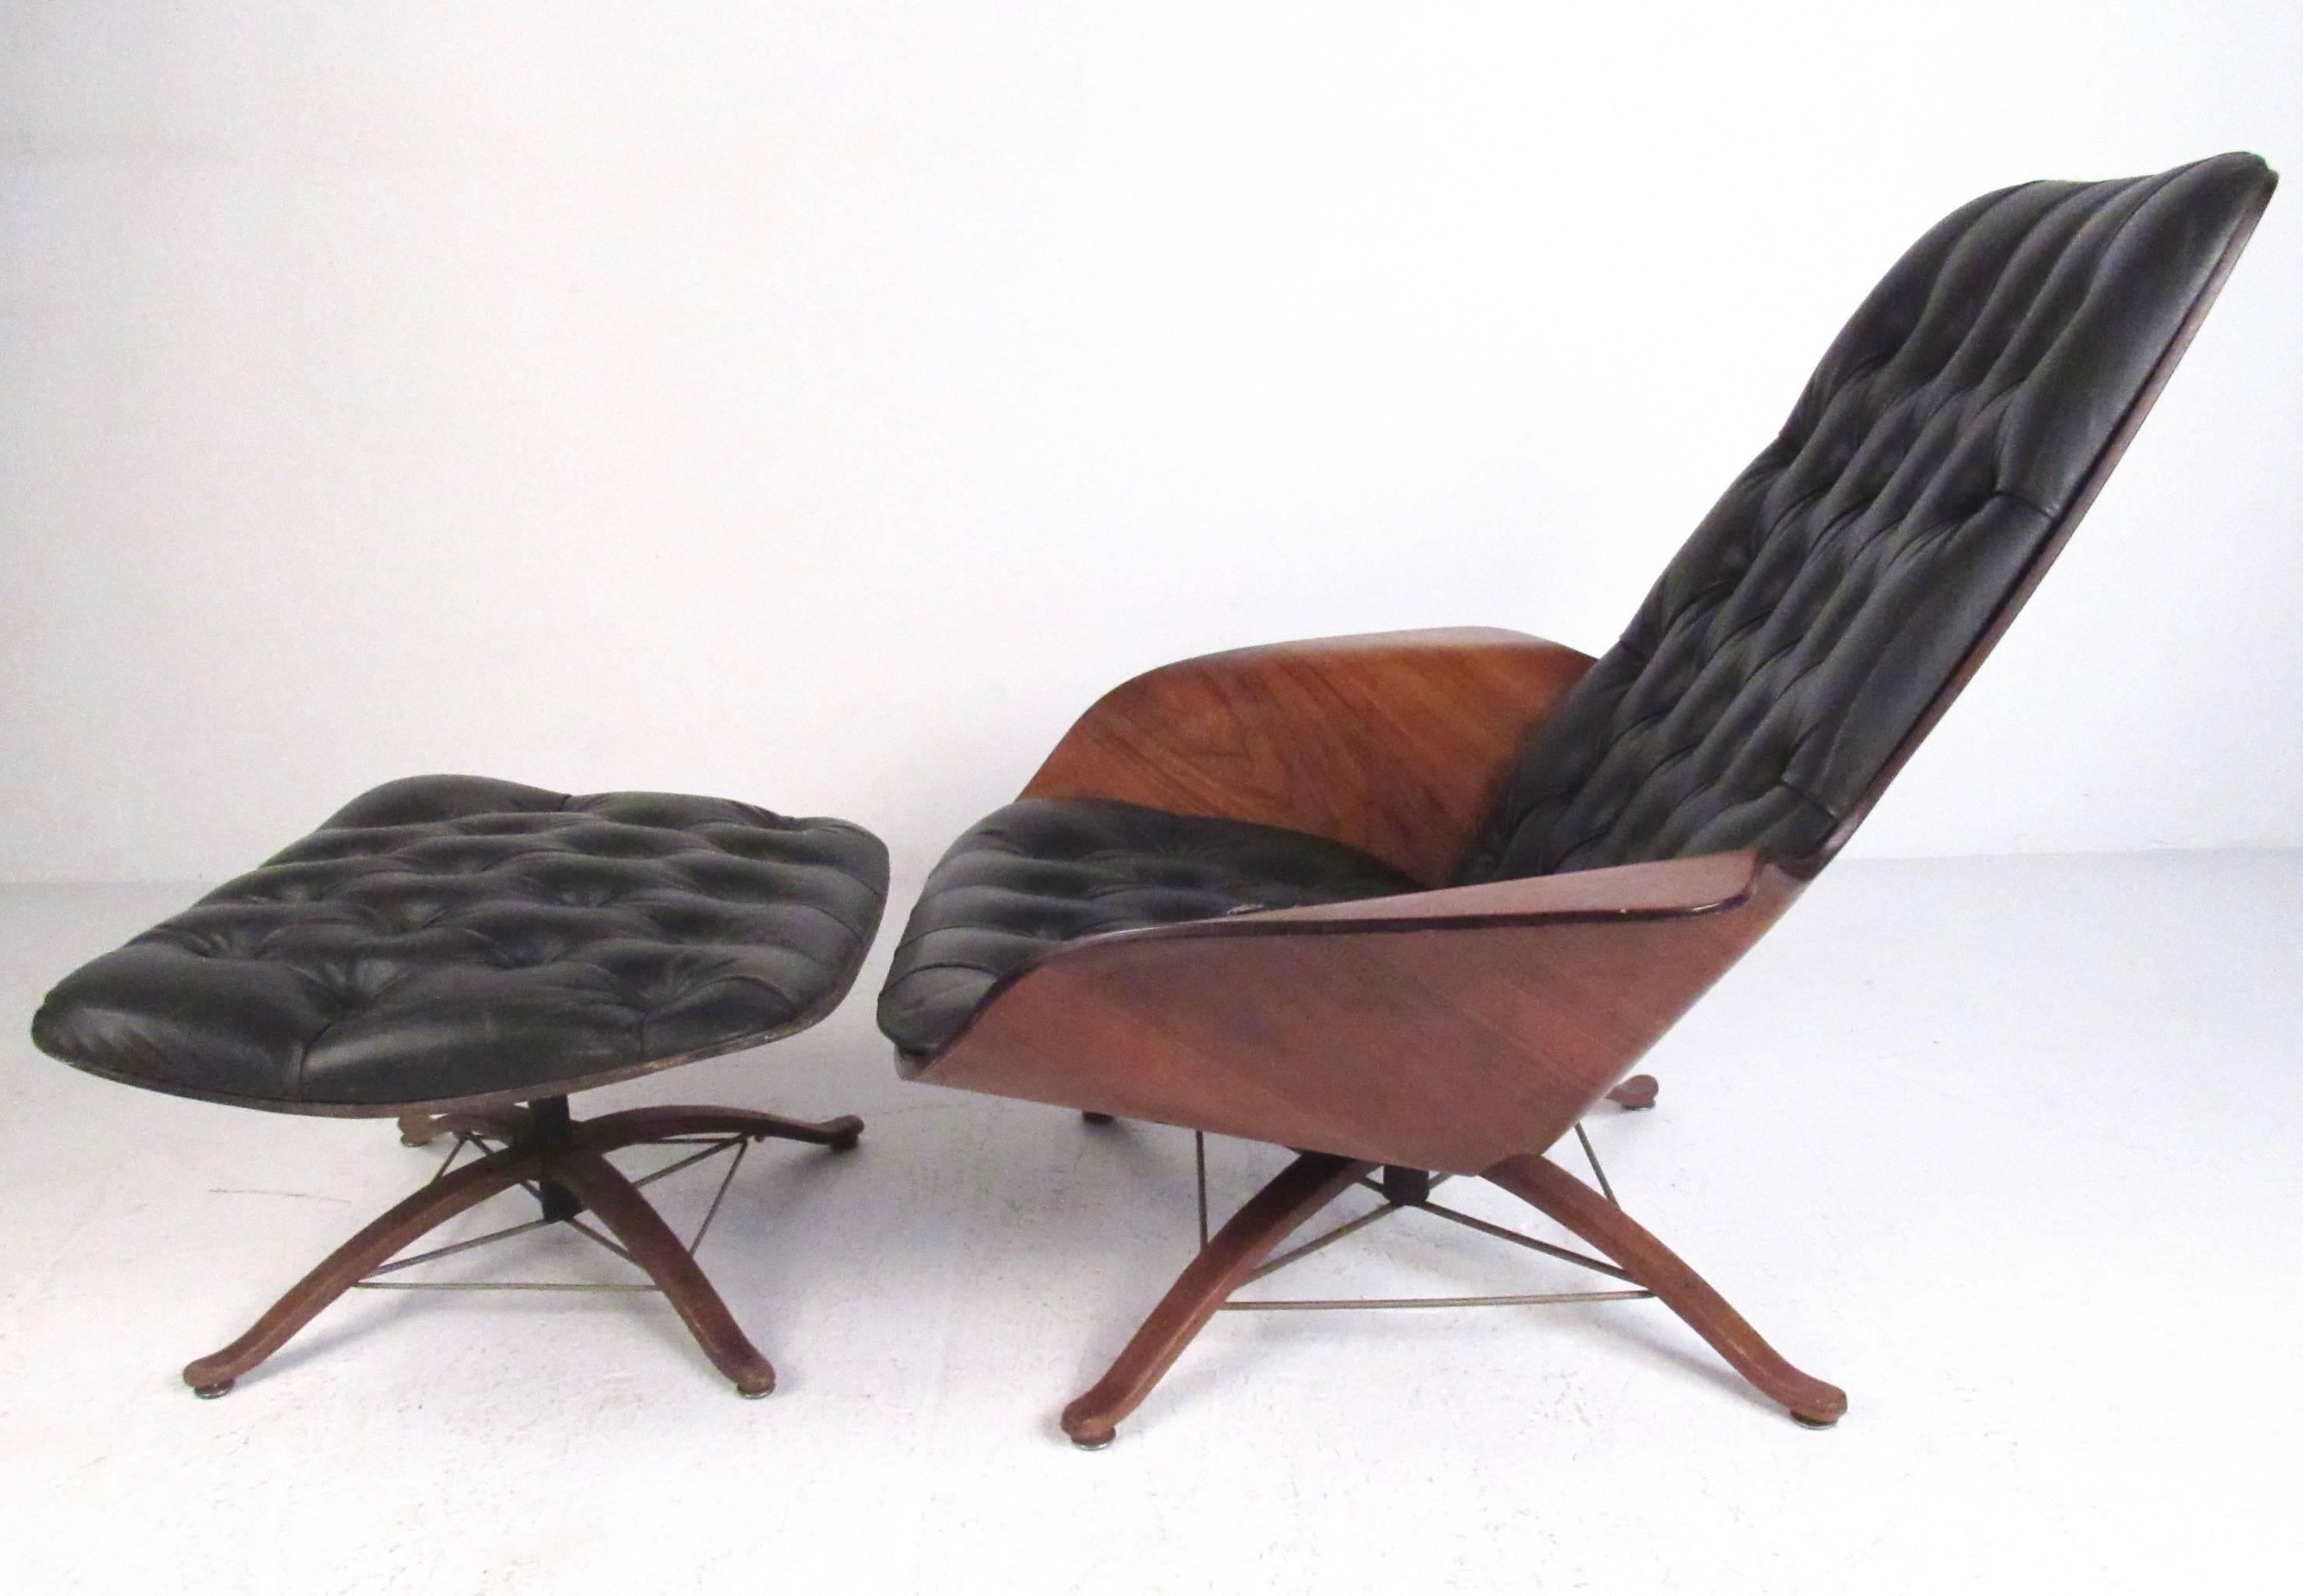 Dieser Loungesessel aus geformtem Schichtholz von George Mulhauser zeichnet sich durch stilvolle flügelähnliche Arme, getuftetes Vinyl und ein einzigartiges Hartholzgestell mit Eiffelträgern aus Messing aus. Die Kombination aus Mid-Century-Design